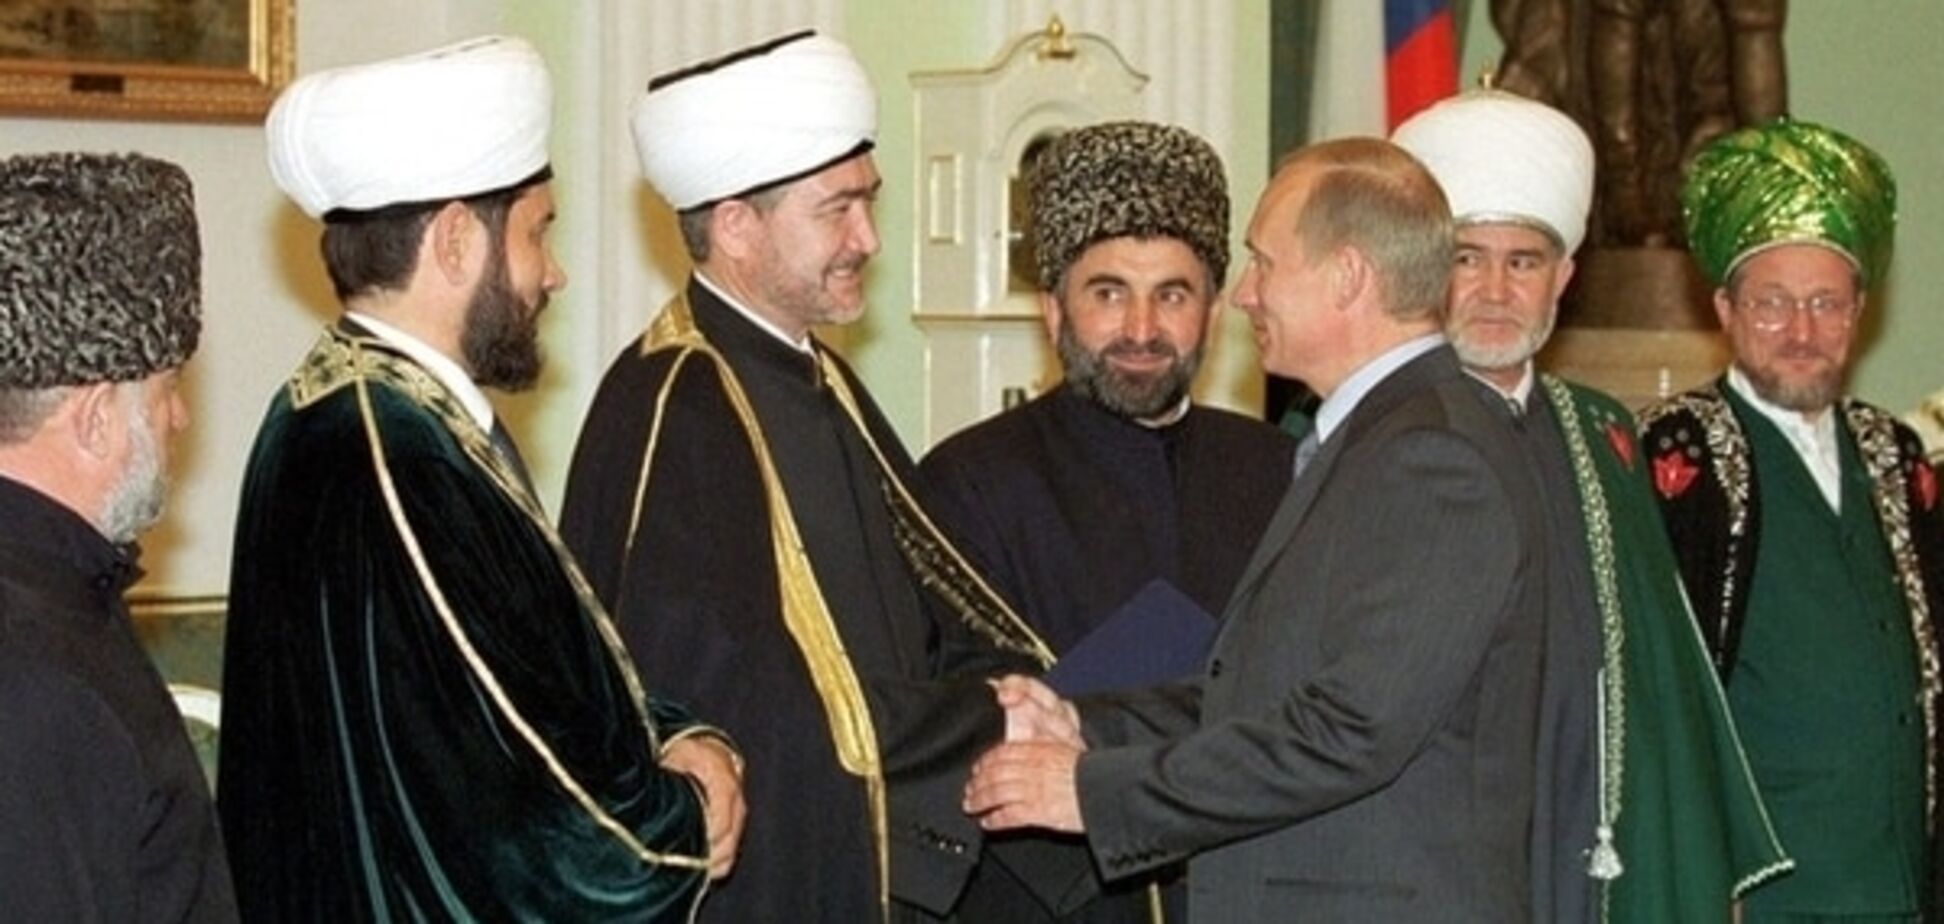 Мусульманський кошмар Путіна: Росія розворушила осине гніздо